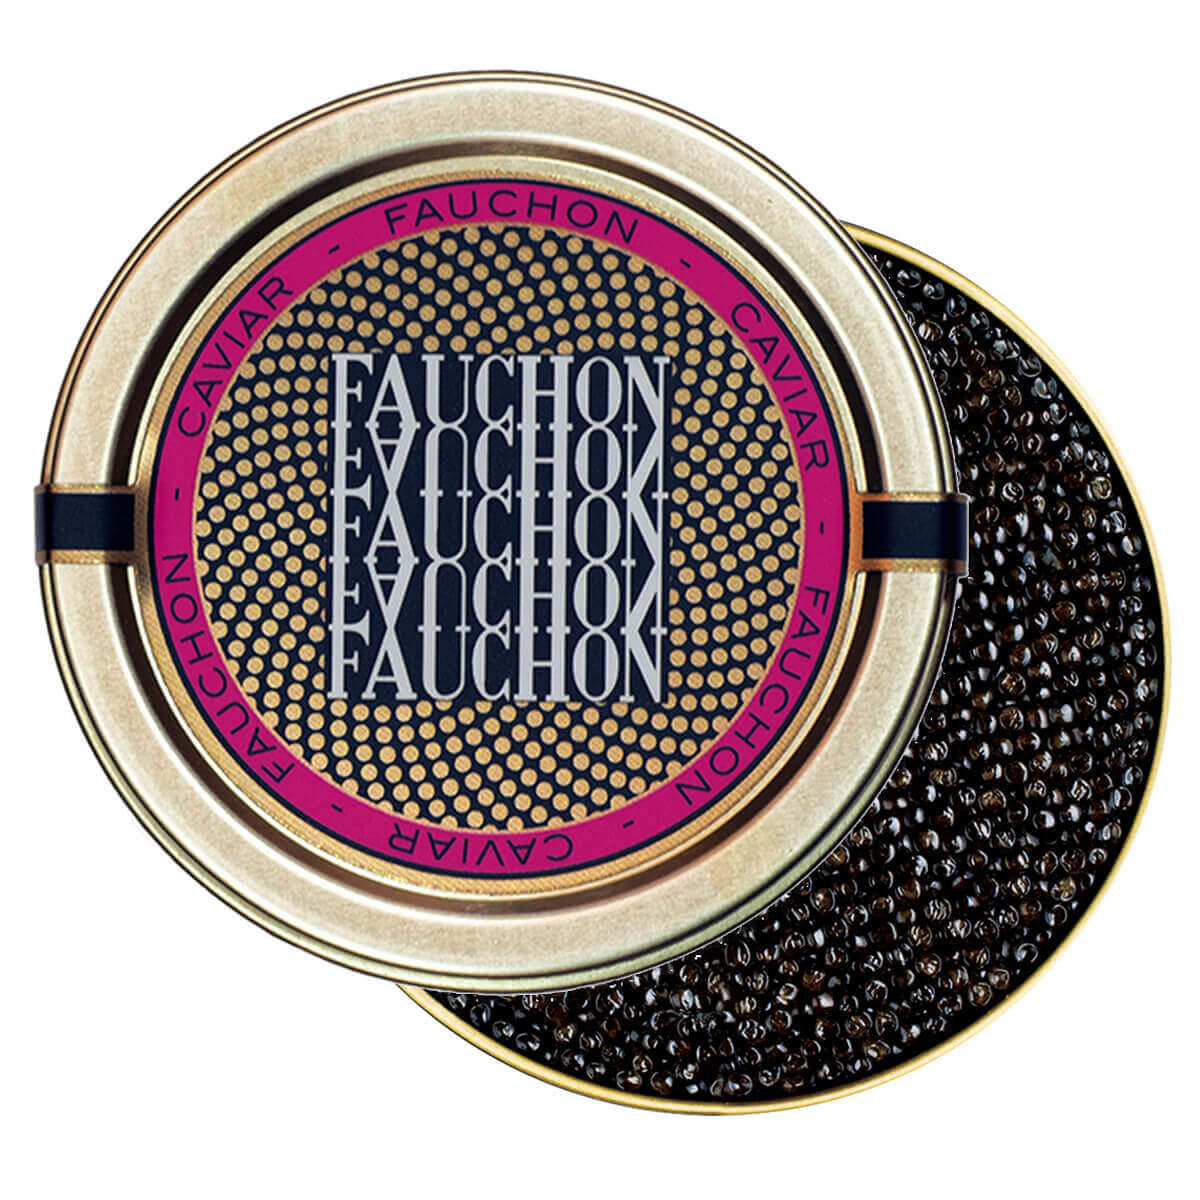 Le Caviar d'Aquitaine Baërii 100g - Epicerie fine